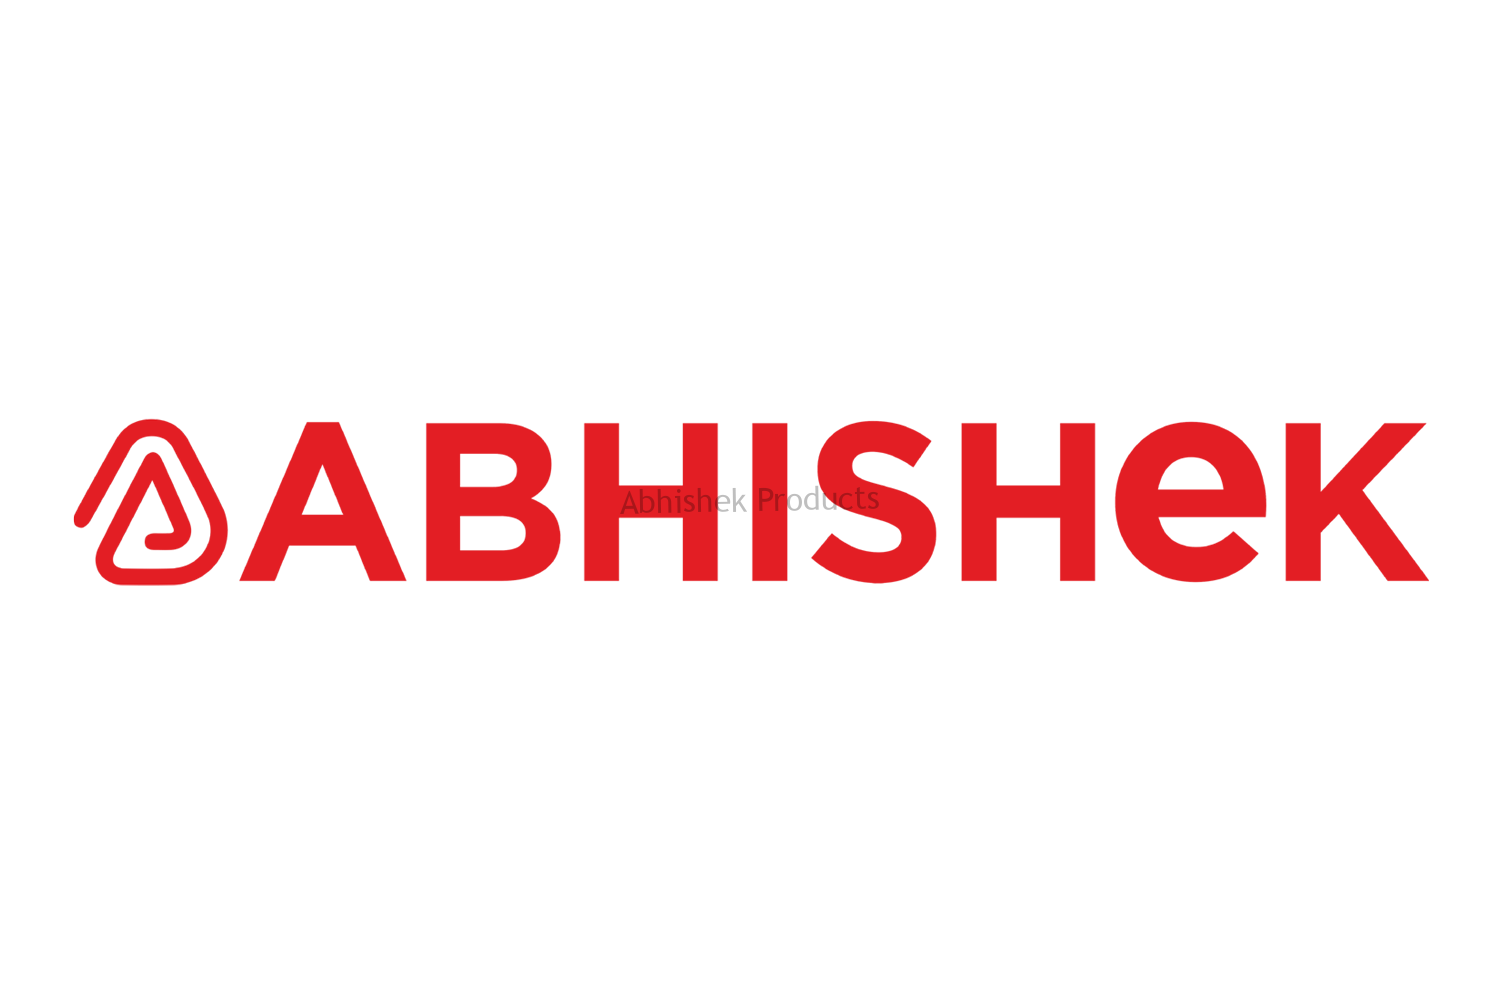 ABHISHEK